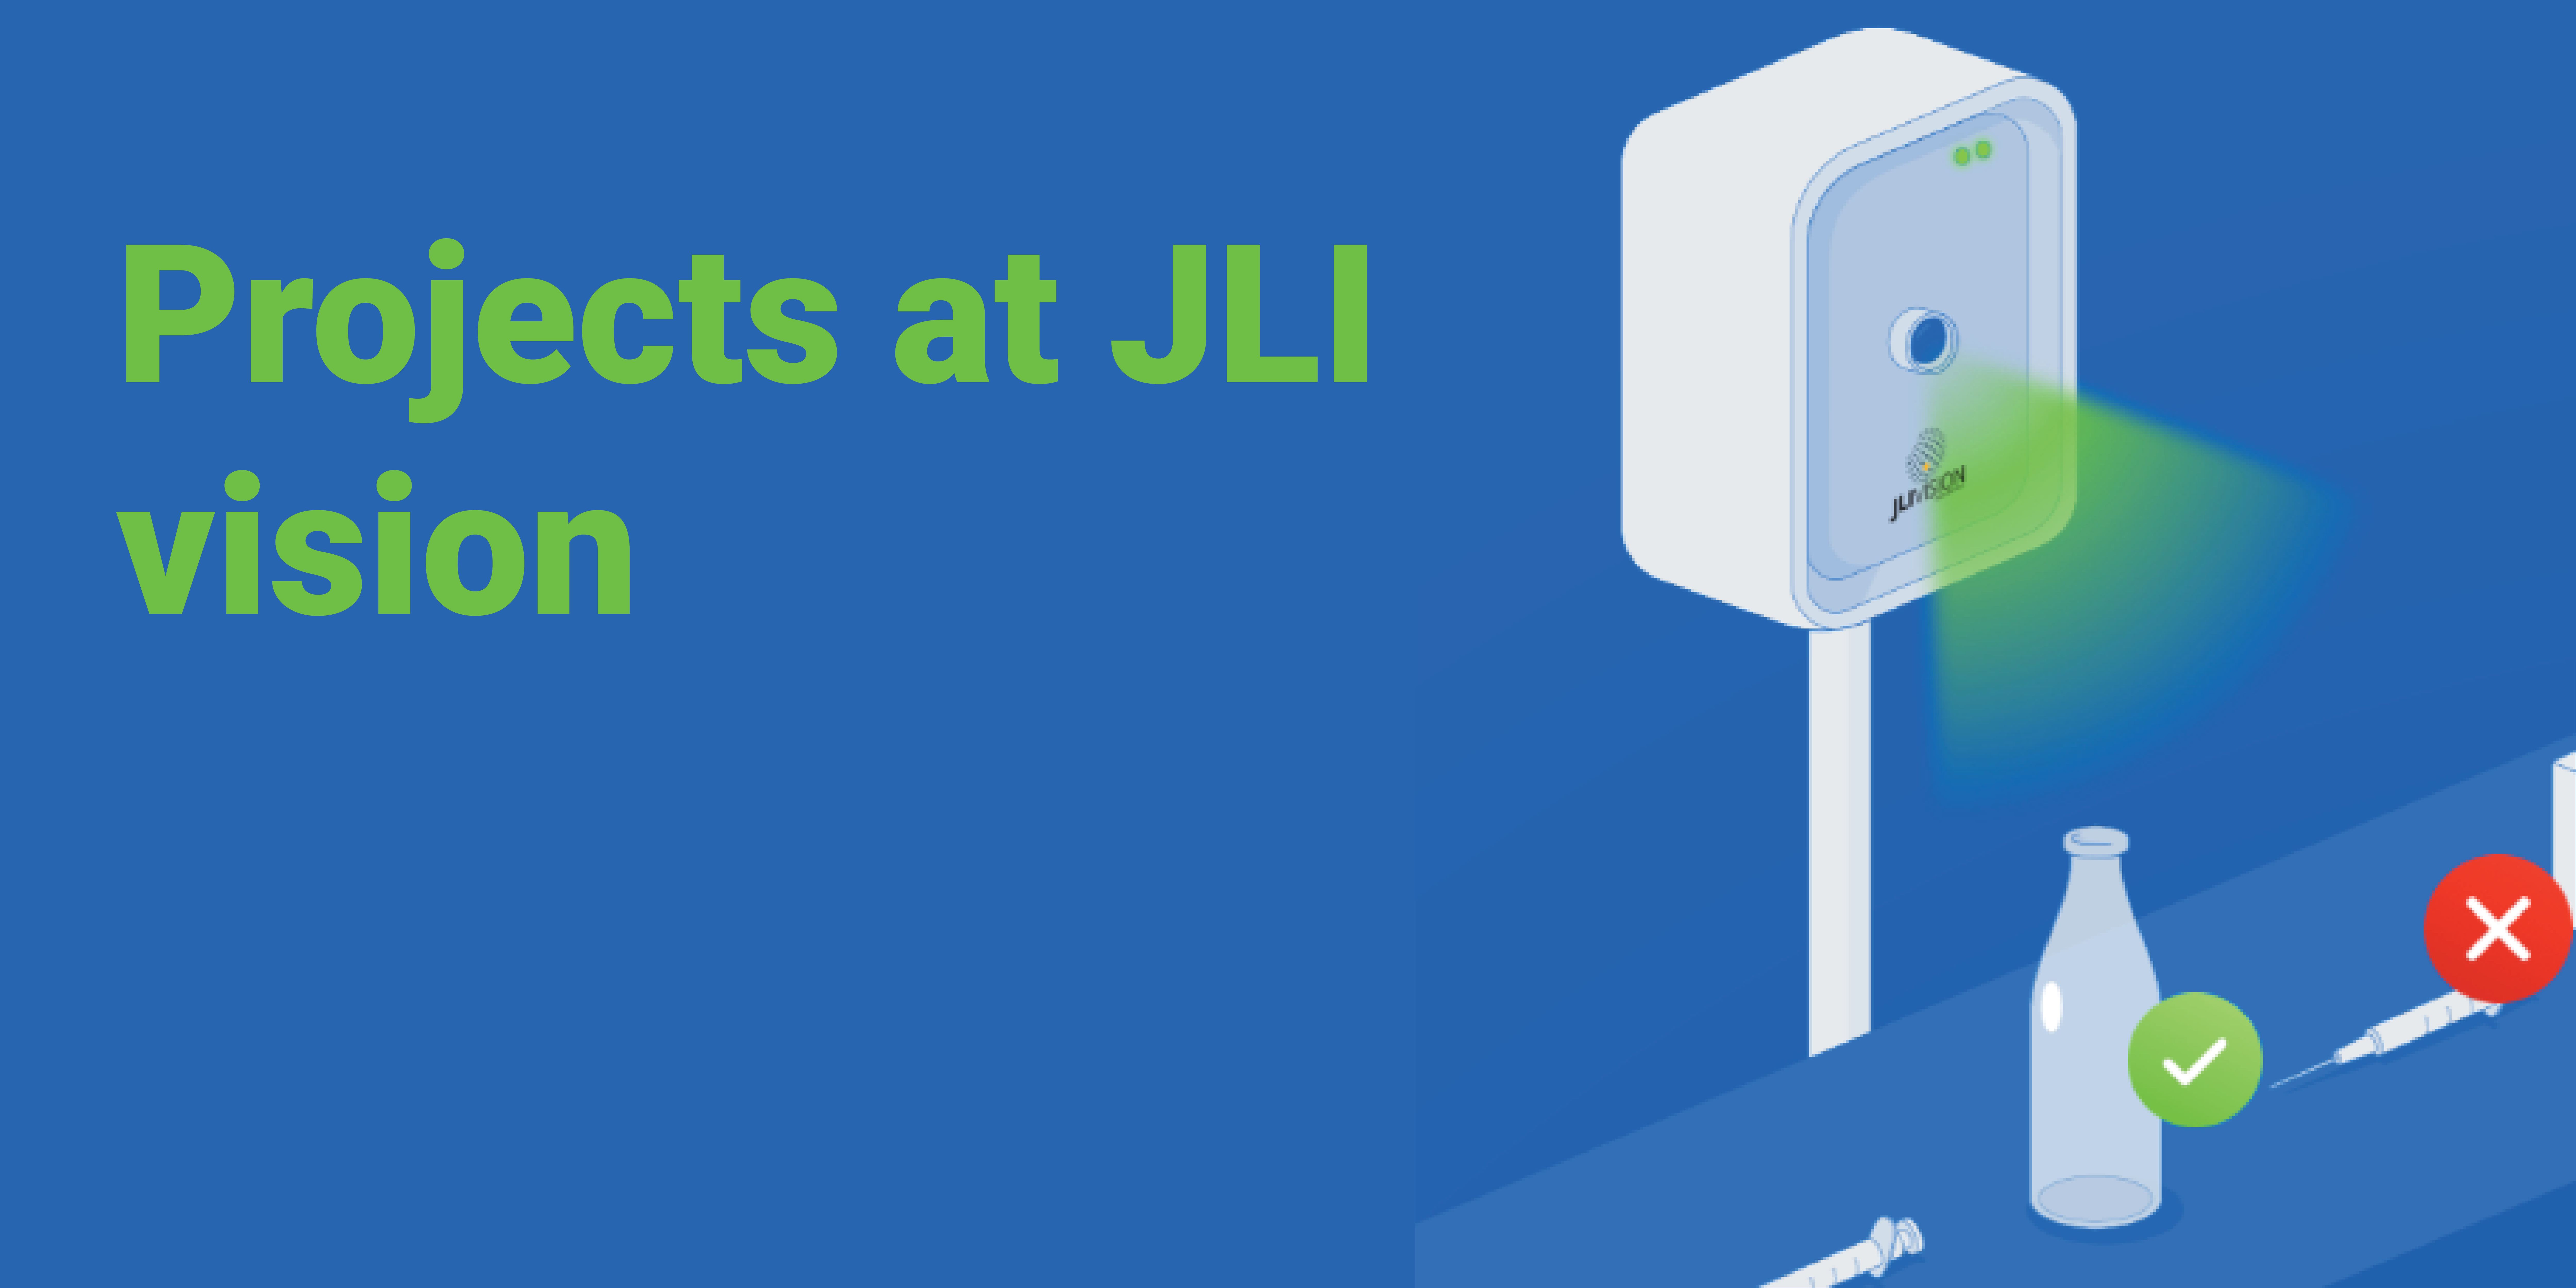 Projects at JLI